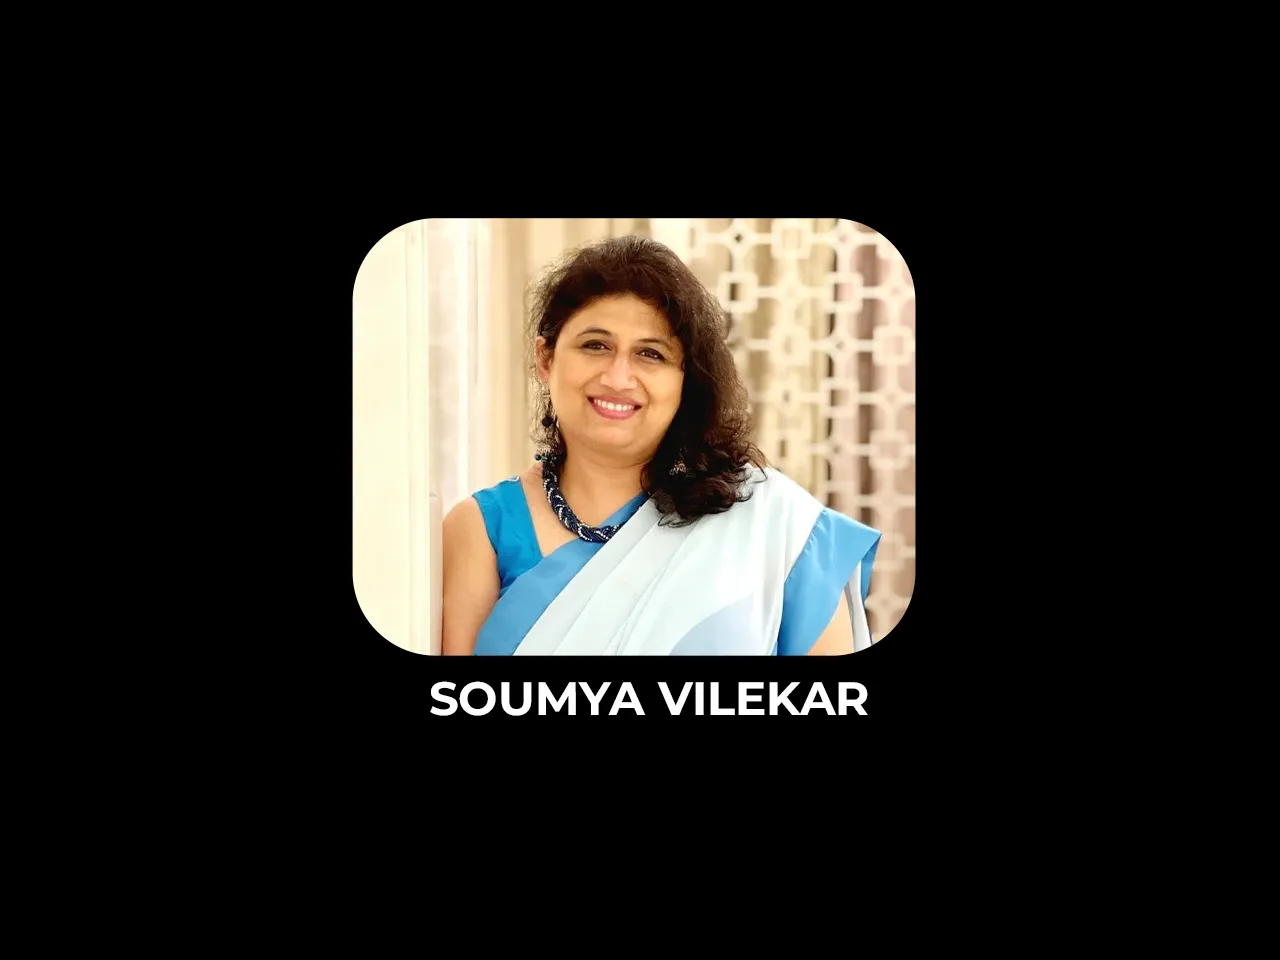 Soumya Vilekar exits Planet Marathi OTT after 7 years